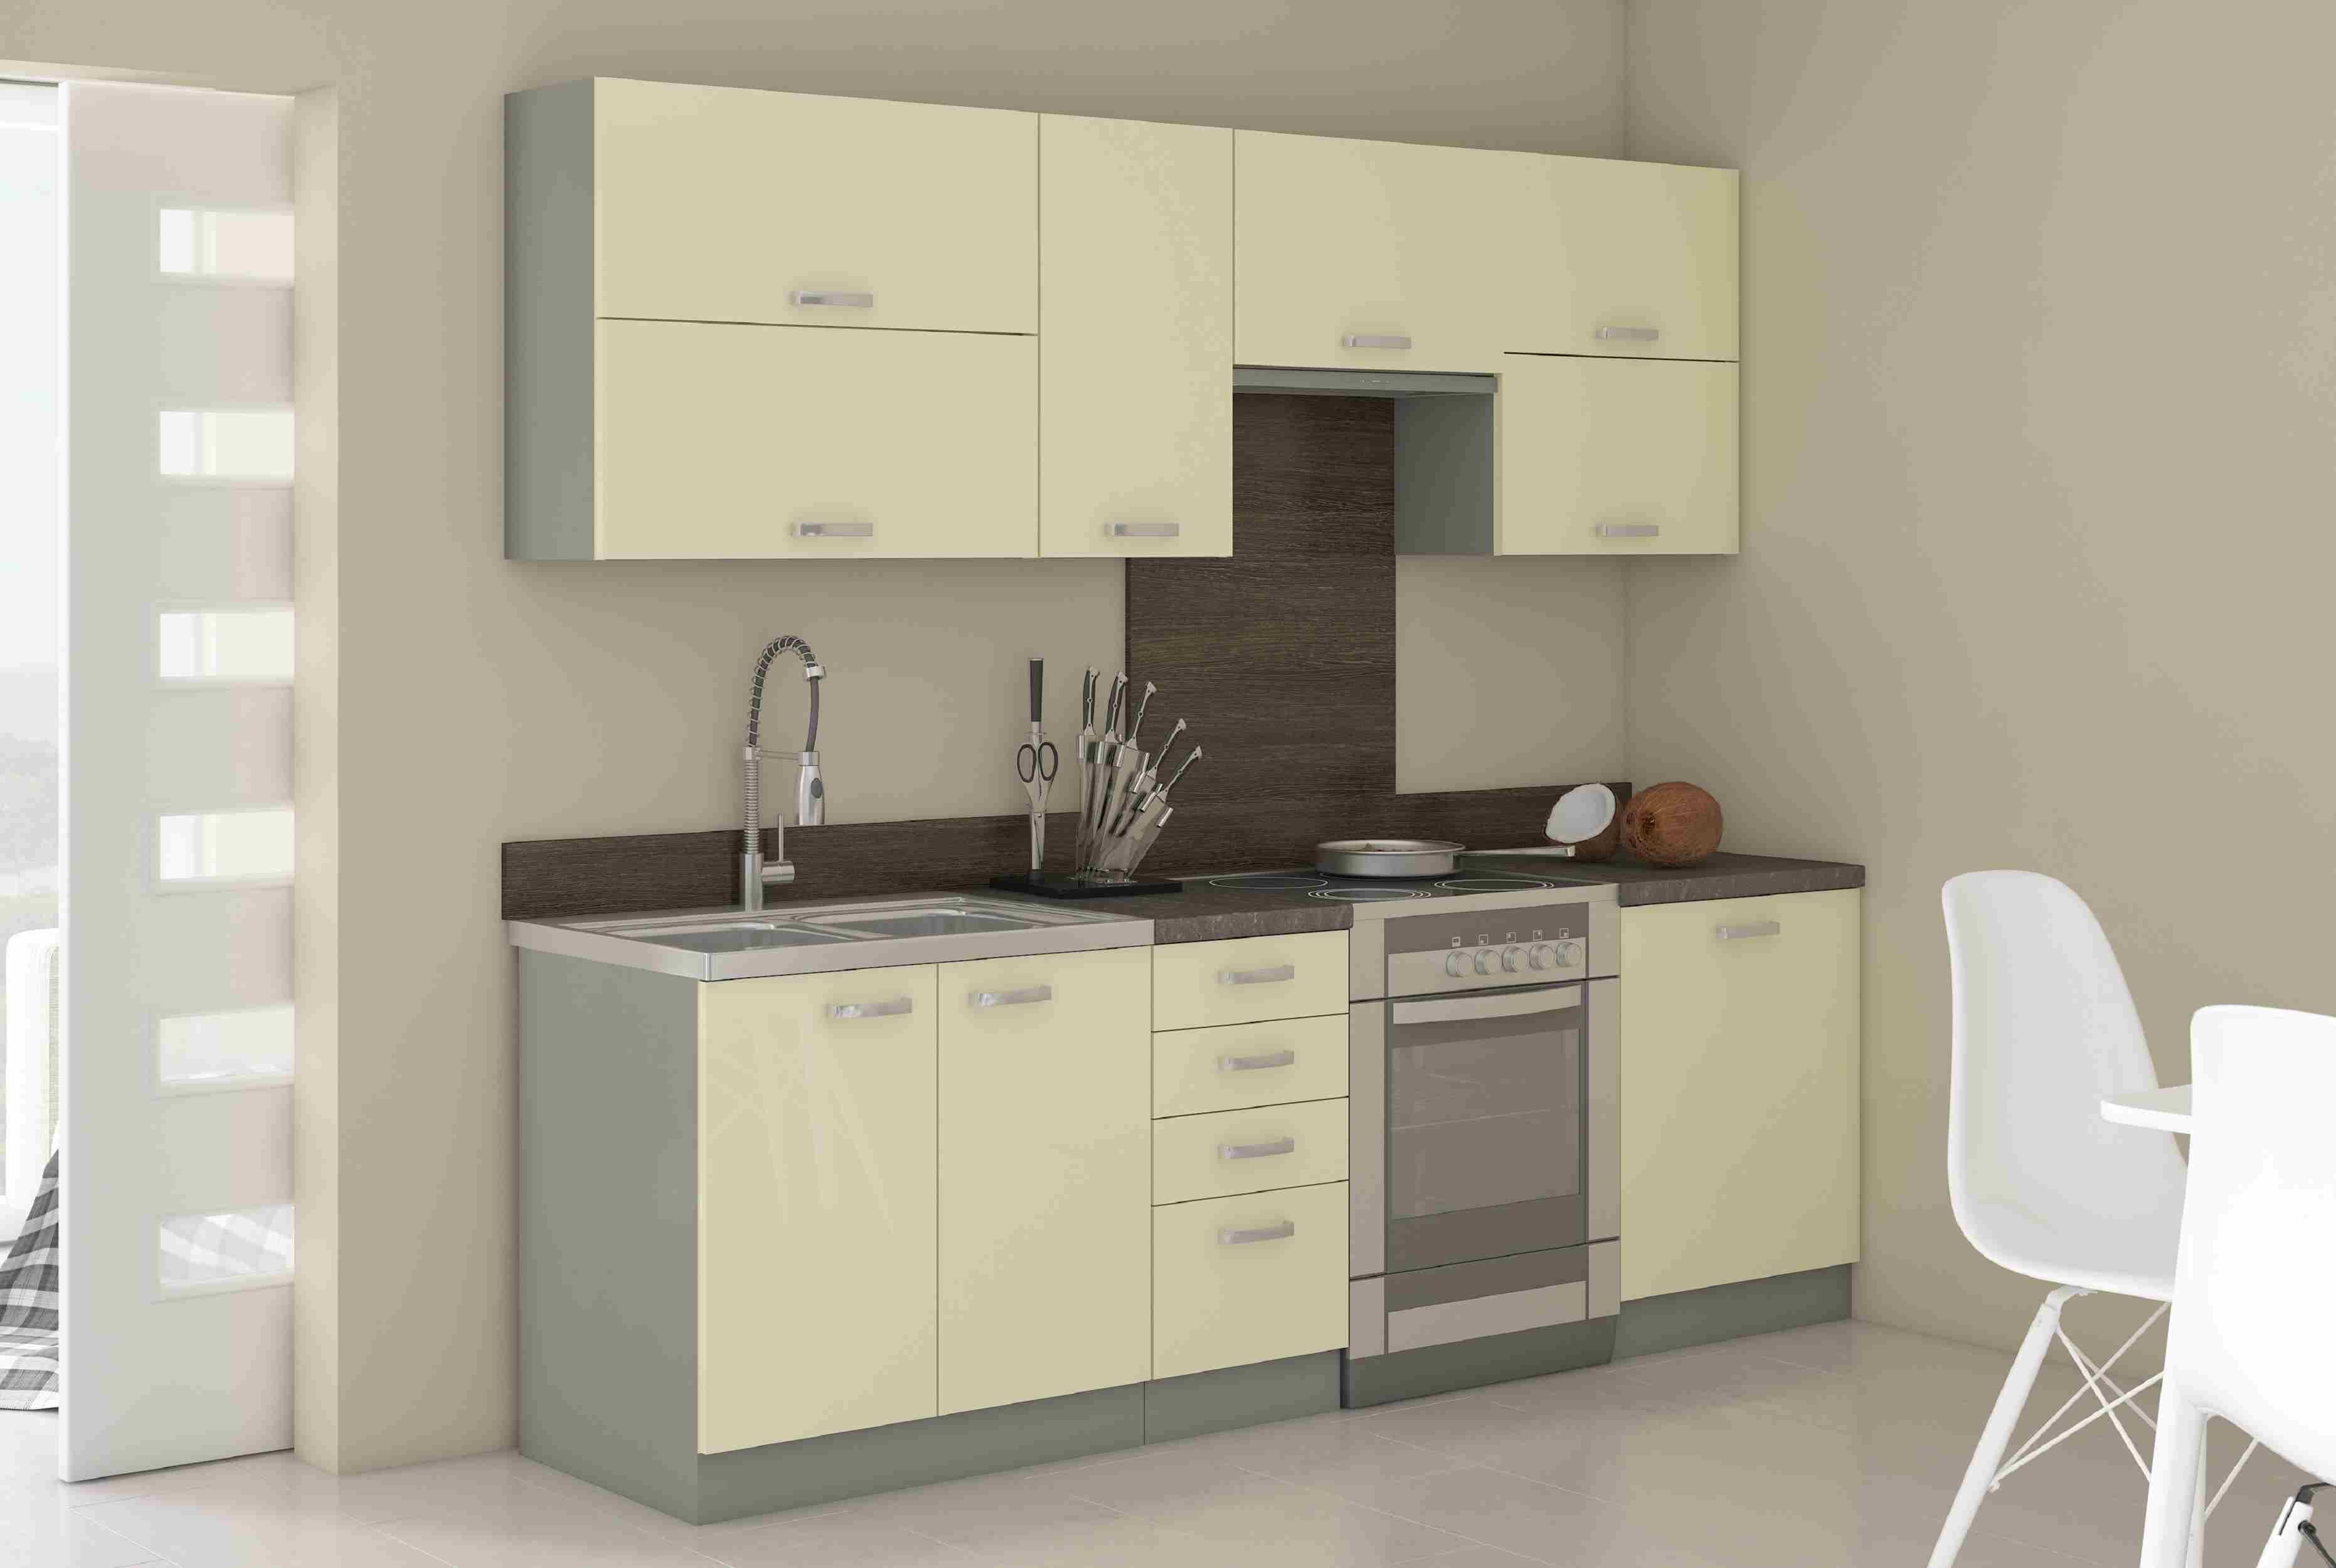 Furnix Küchenzeile Karlin 240 cm breit Einbau-Küche mit Hängeschränken Grau, 240x85,8x60 cm, 4 Hänge- und 4 Unterschränke, Design & Funktionalität